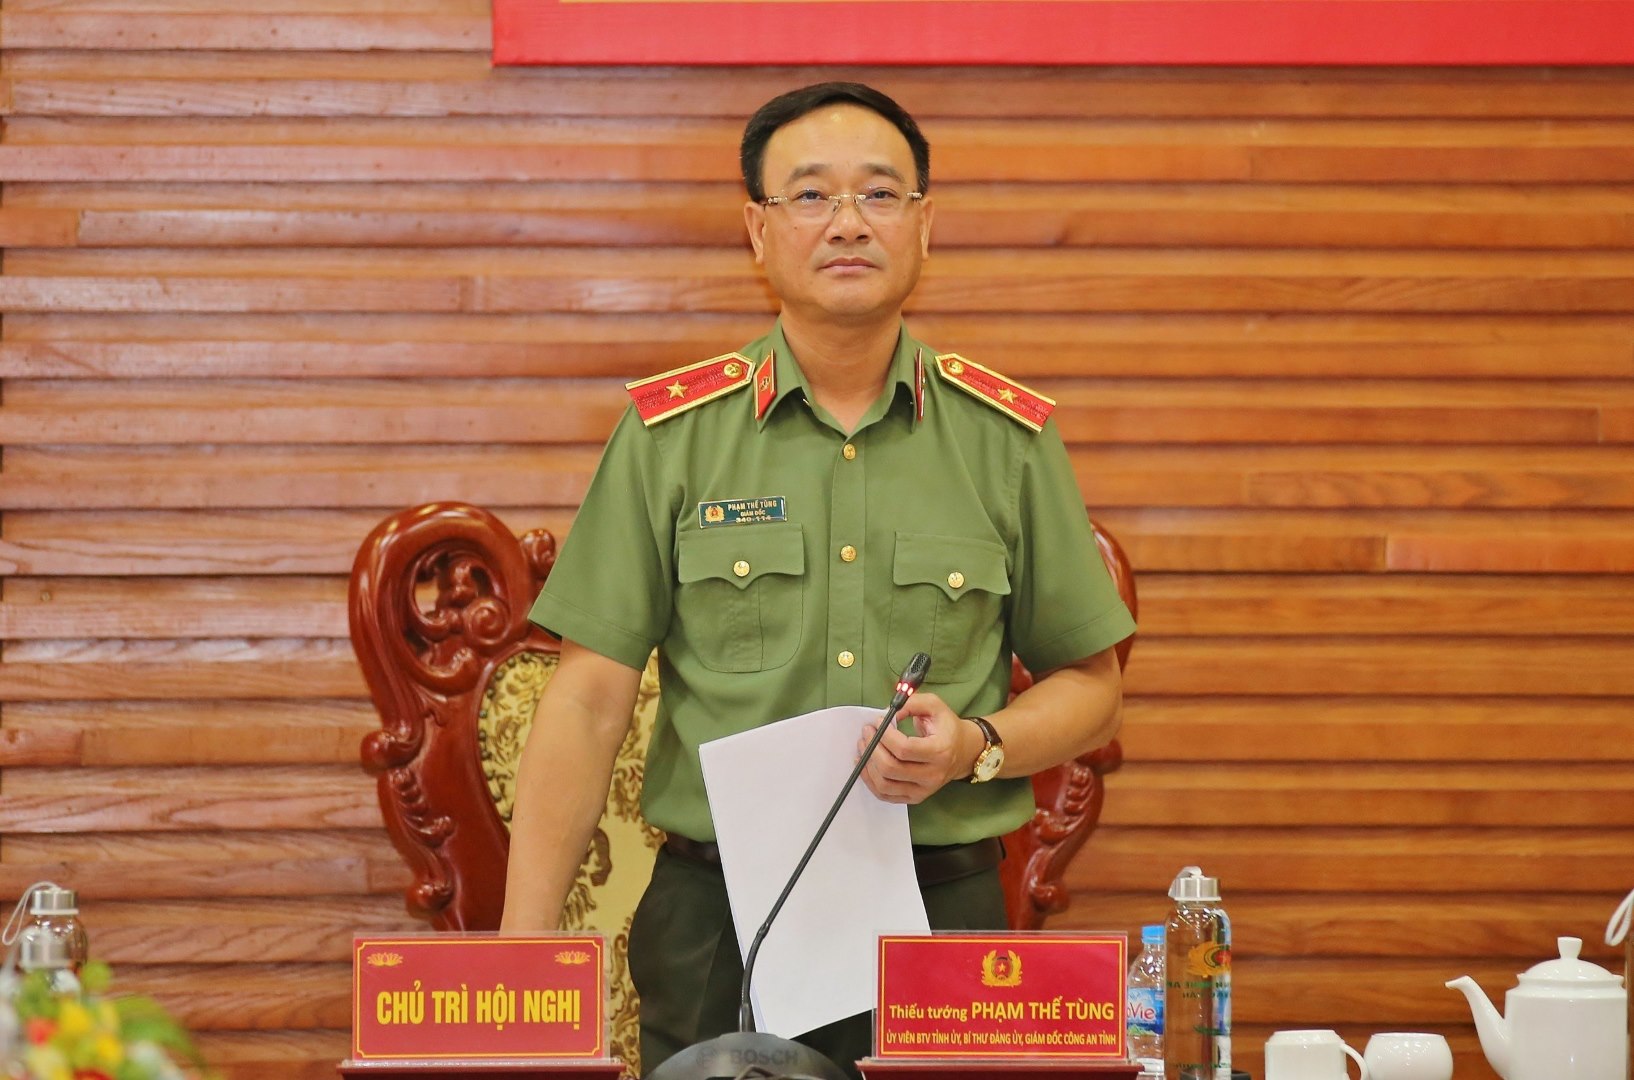 Đồng chí Thiếu tướng Phạm Thế Tùng, Ủy viên Ban Thường vụ Tỉnh ủy, Bí thư Đảng ủy, Giám đốc Công an tỉnh chủ trì hội nghị